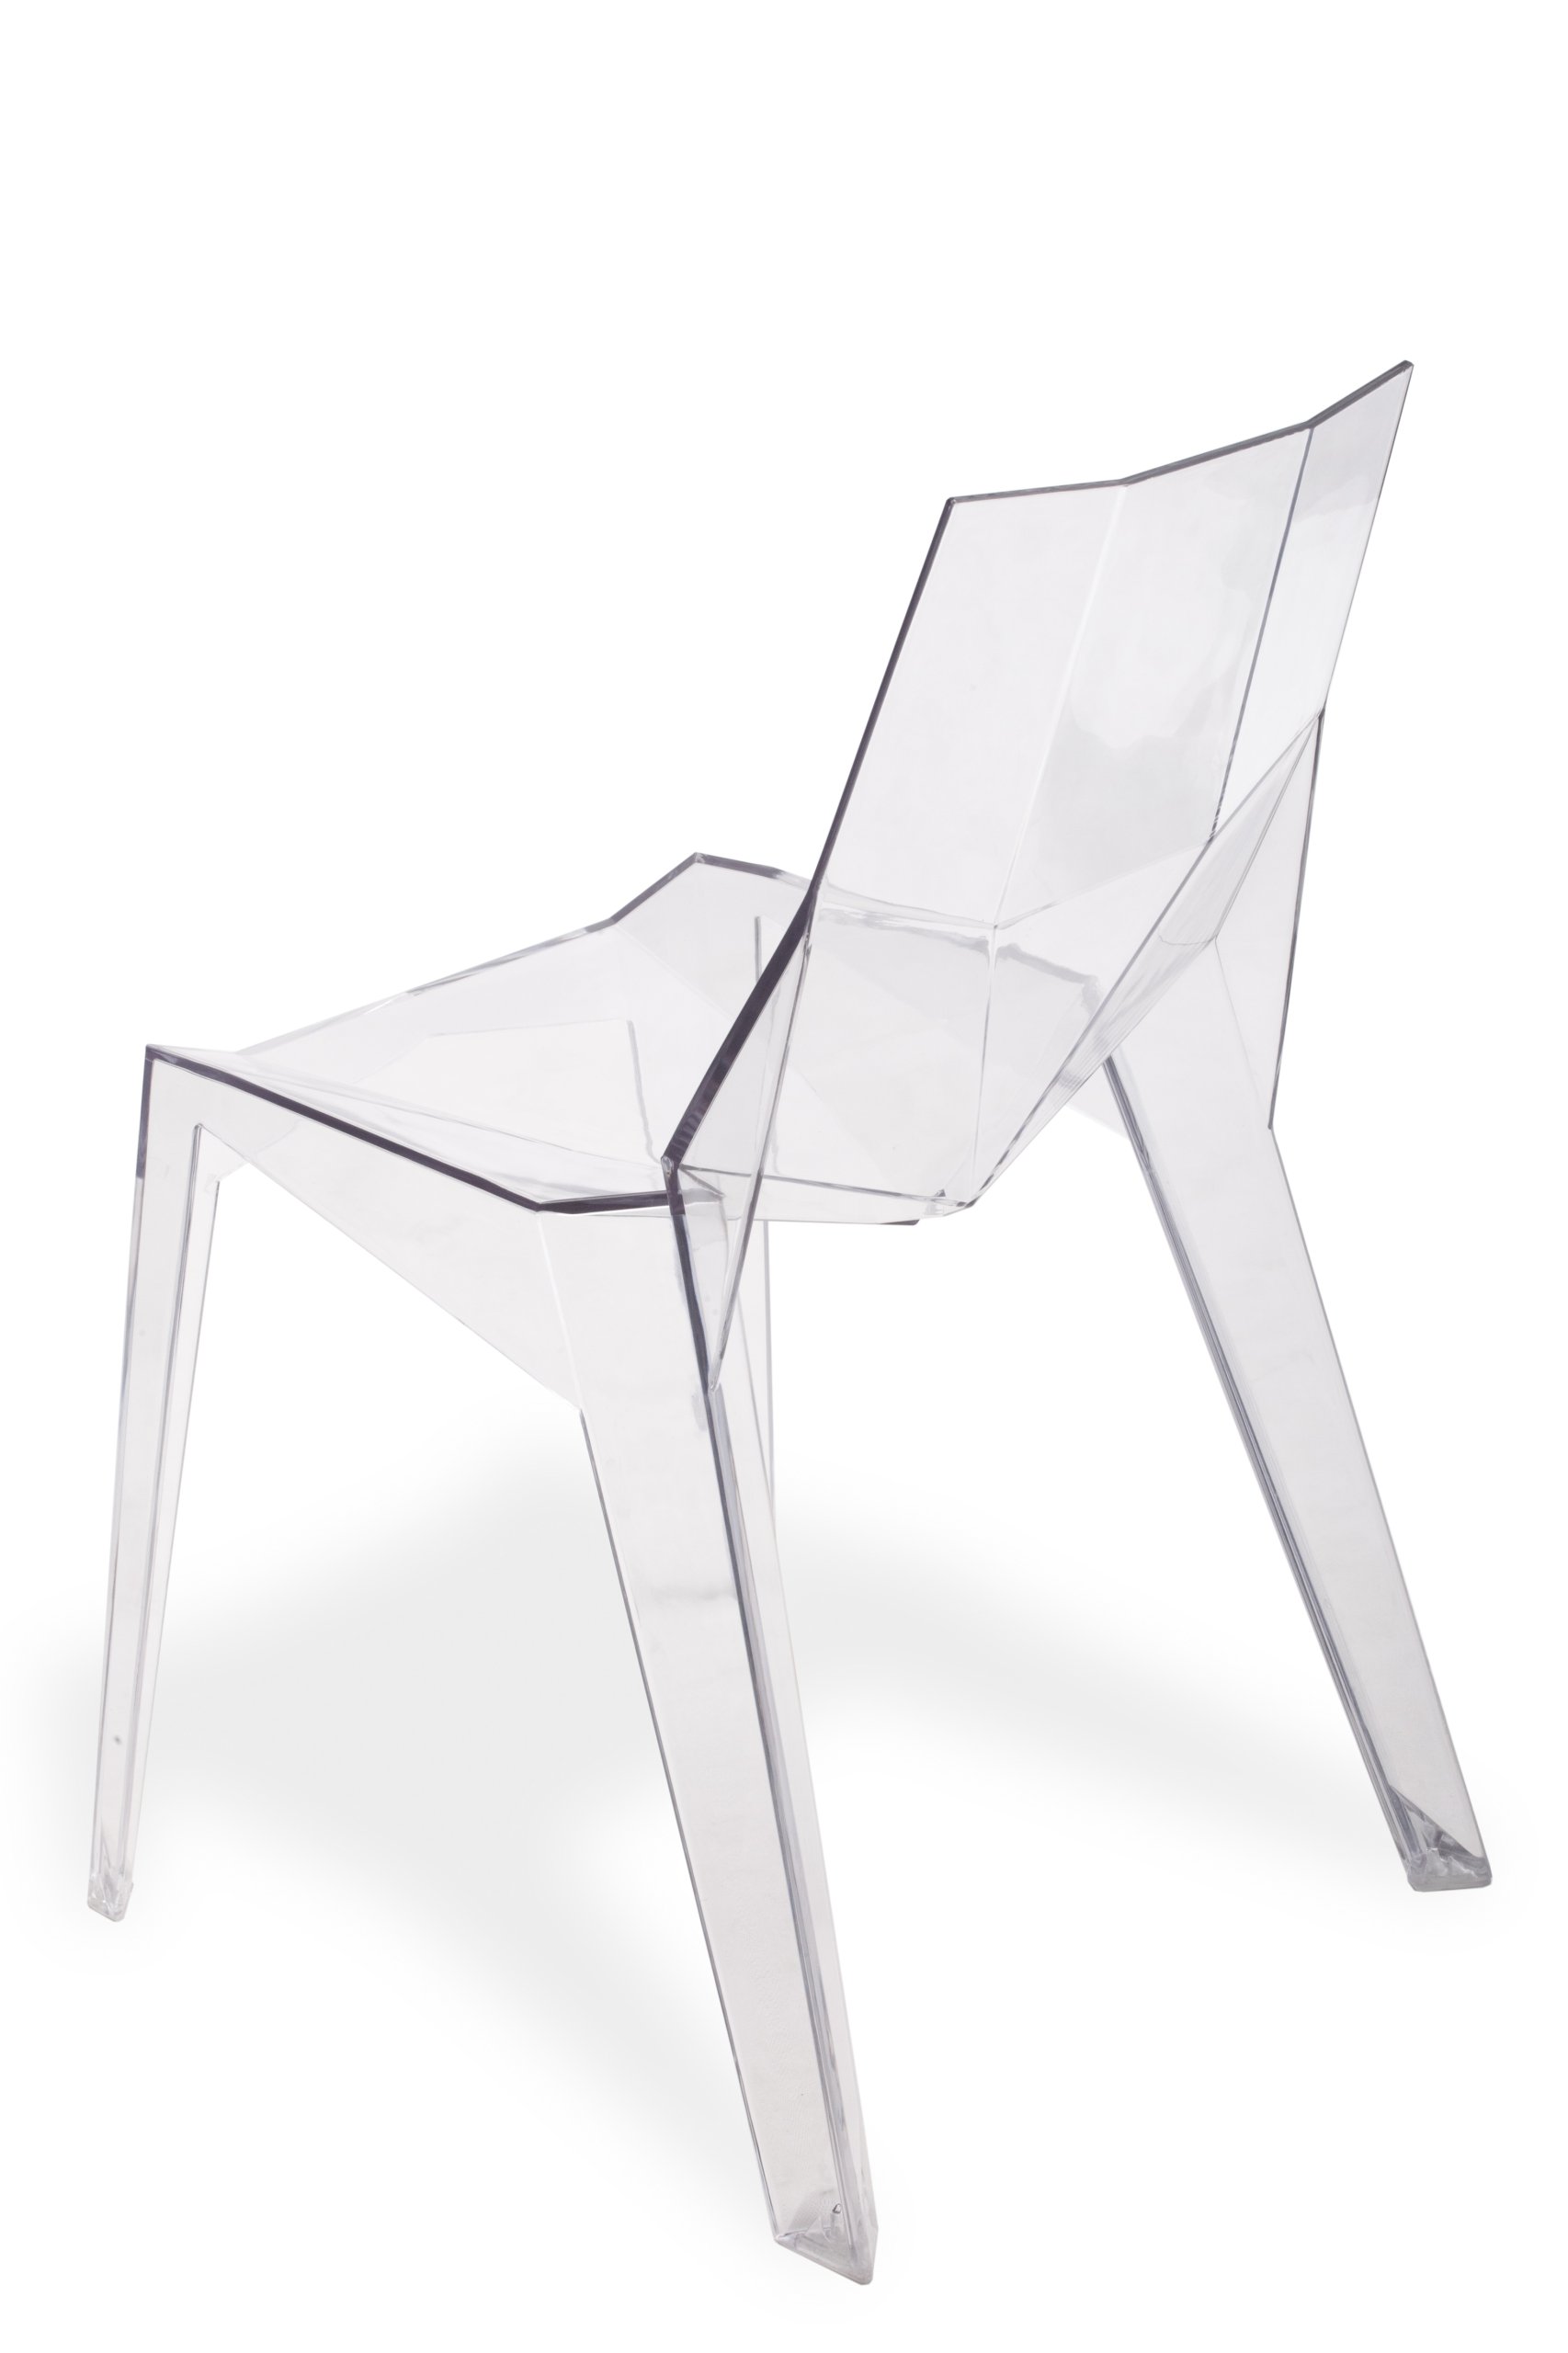 Krzeslo Diamond Transparentne Przezroczyste Trwale 7047320612 Oficjalne Archiwum Allegro